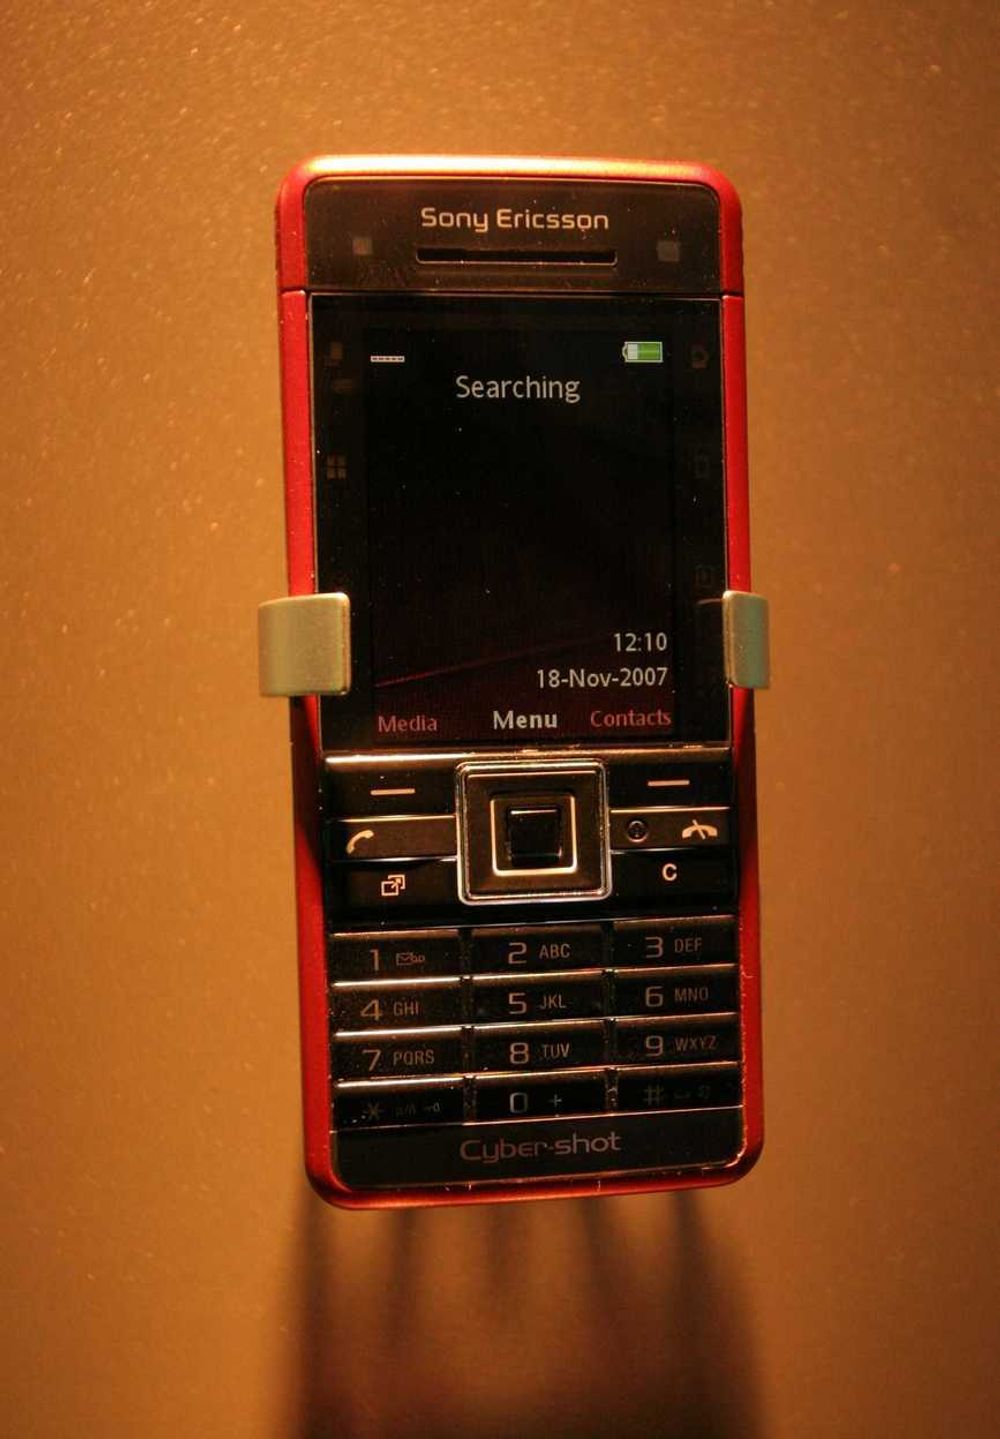 FRONT: Dette er det som venter deg når du tar en titt på den nye C902 fra Sony Ericsson.